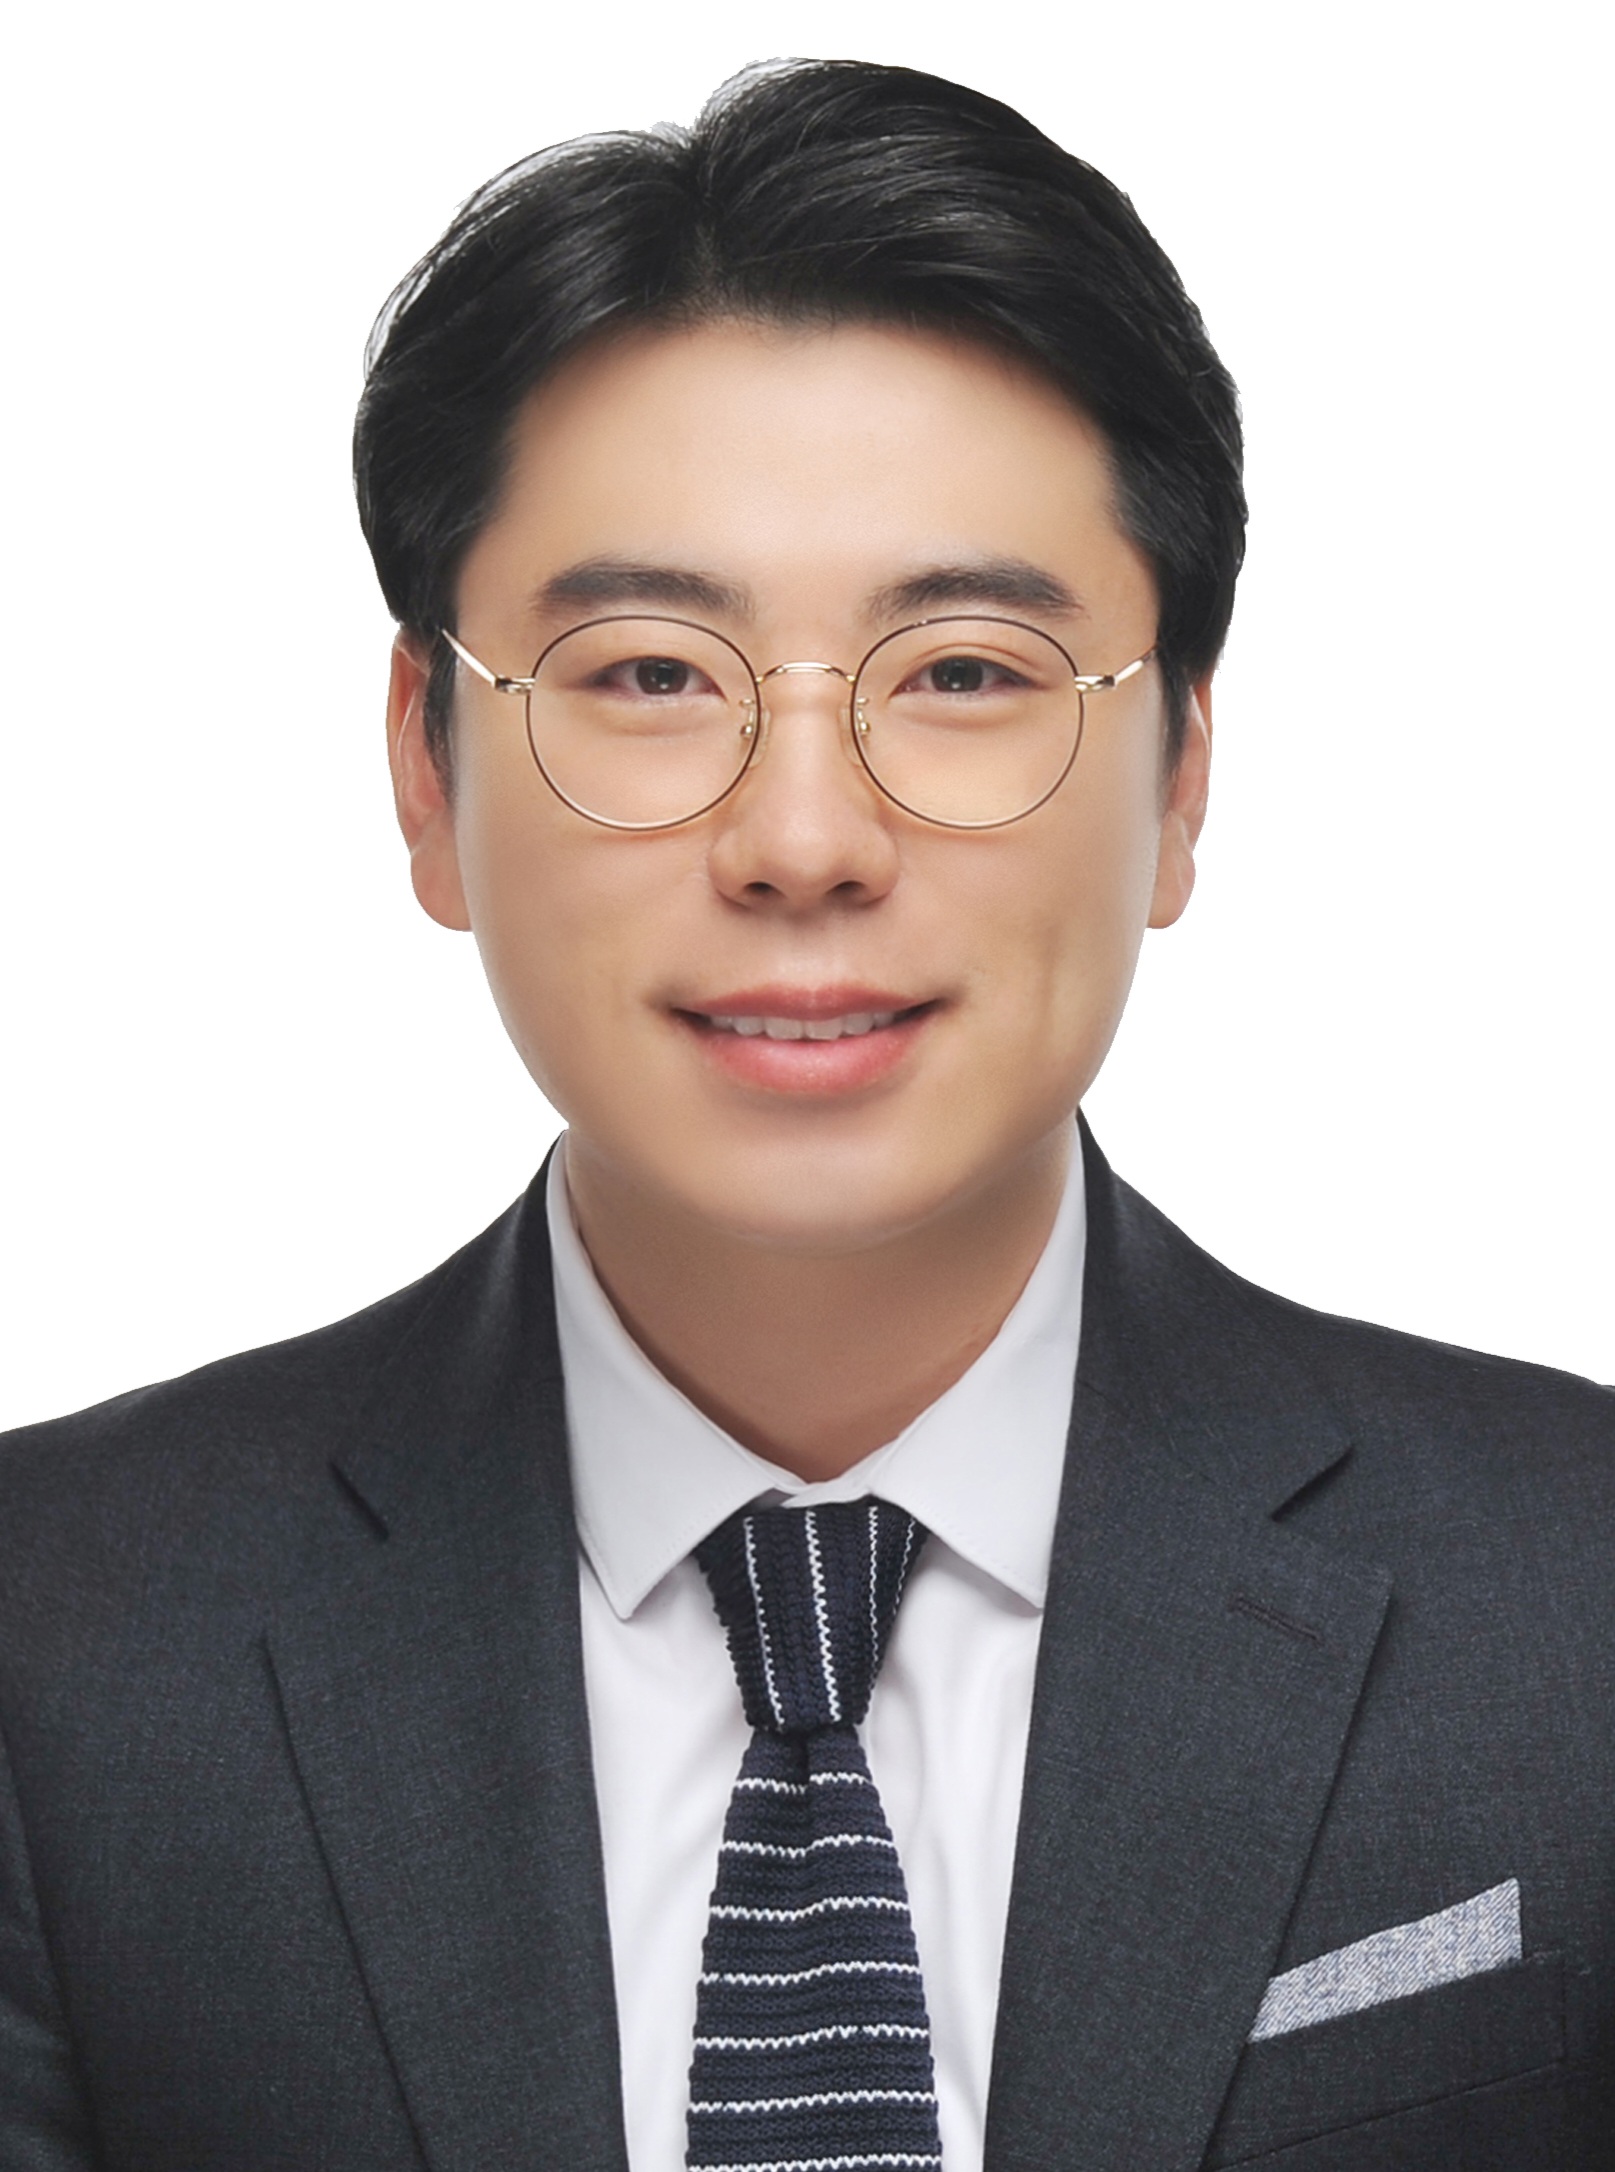 Kang Jung Kay Head of City Welfarecommittee